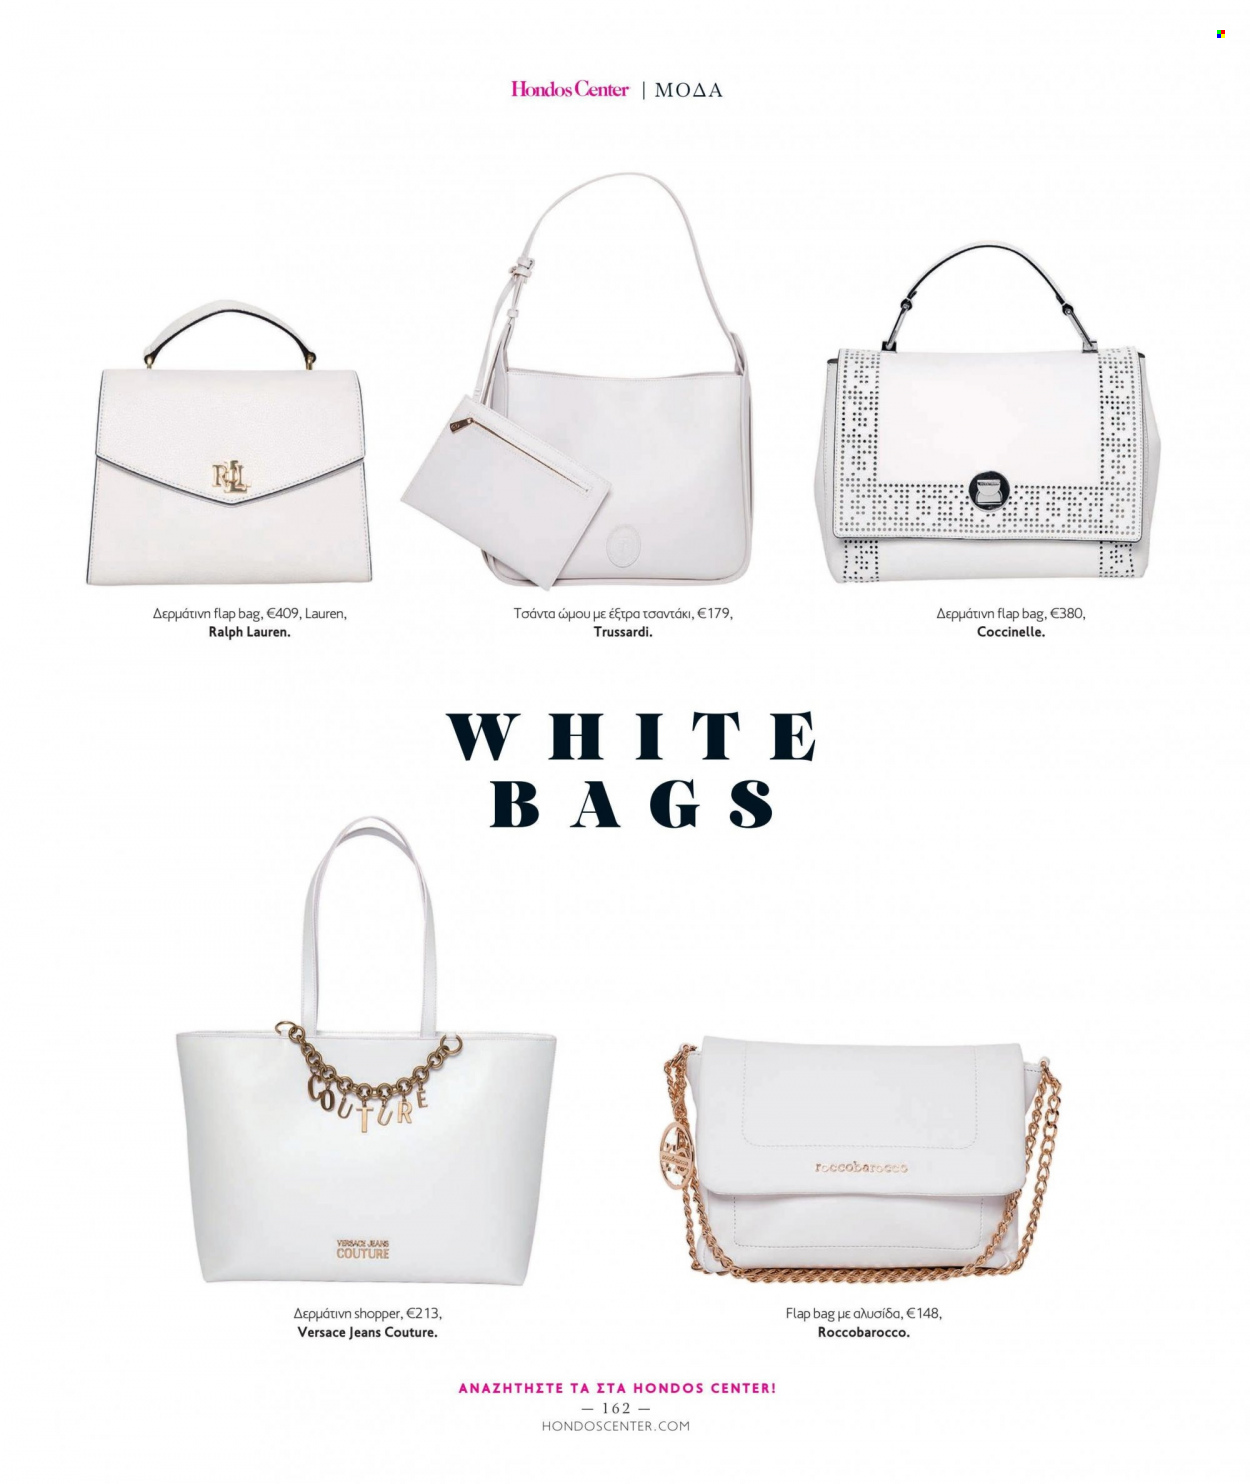 Φυλλάδια Hondos Center - Εκπτωτικά προϊόντα - Ralph Lauren, Versace, τζην, τσάντα. Σελίδα 162.